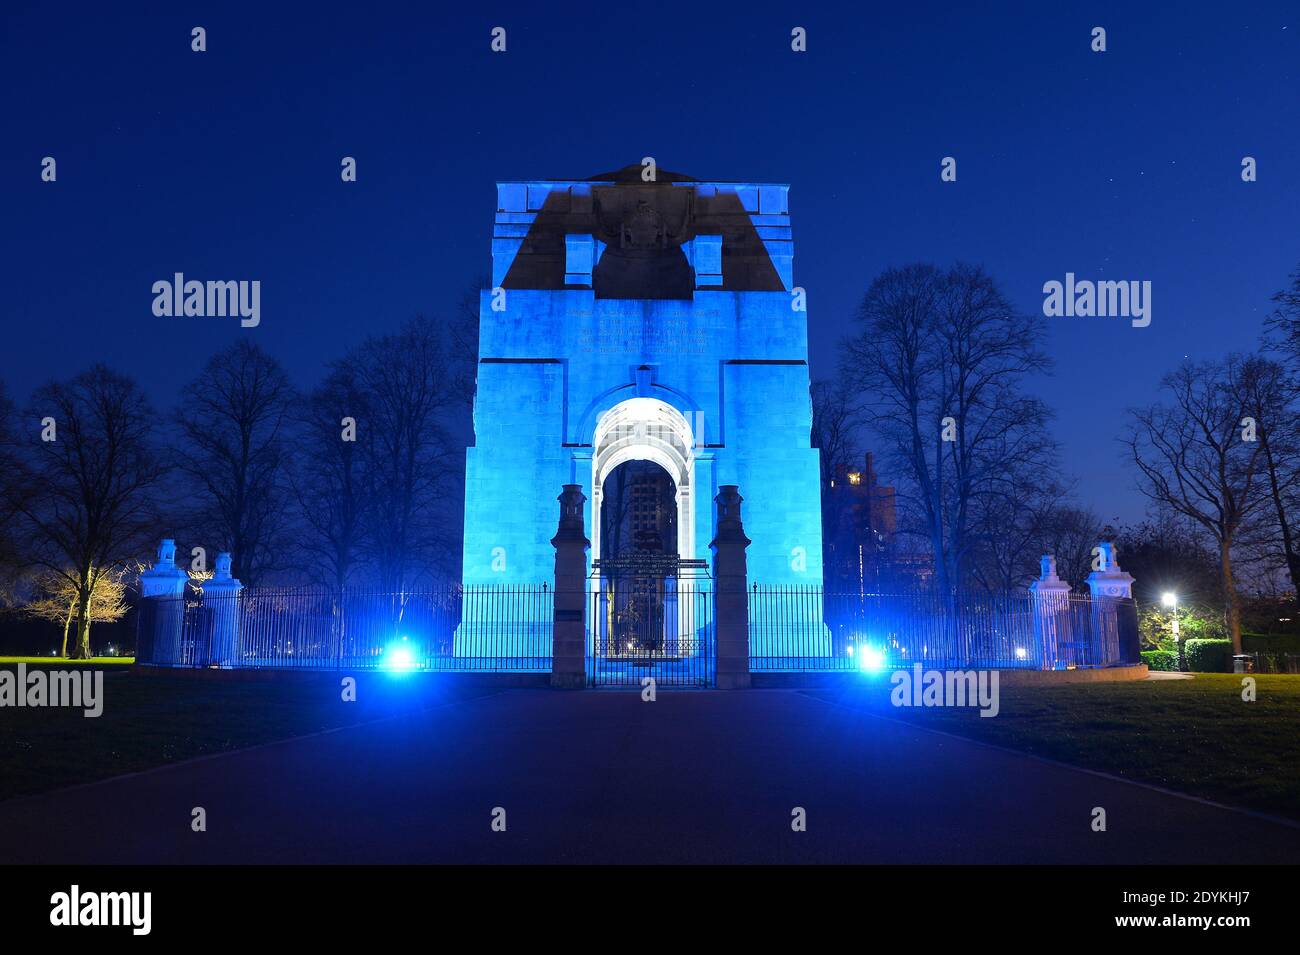 Das war Memorial im Victoria Park in Leicester ist beleuchtet Mit blauem Licht, um den Beschäftigten des NHS Tribut zu zollen Während der Coronavirus-Pandemie Stockfoto